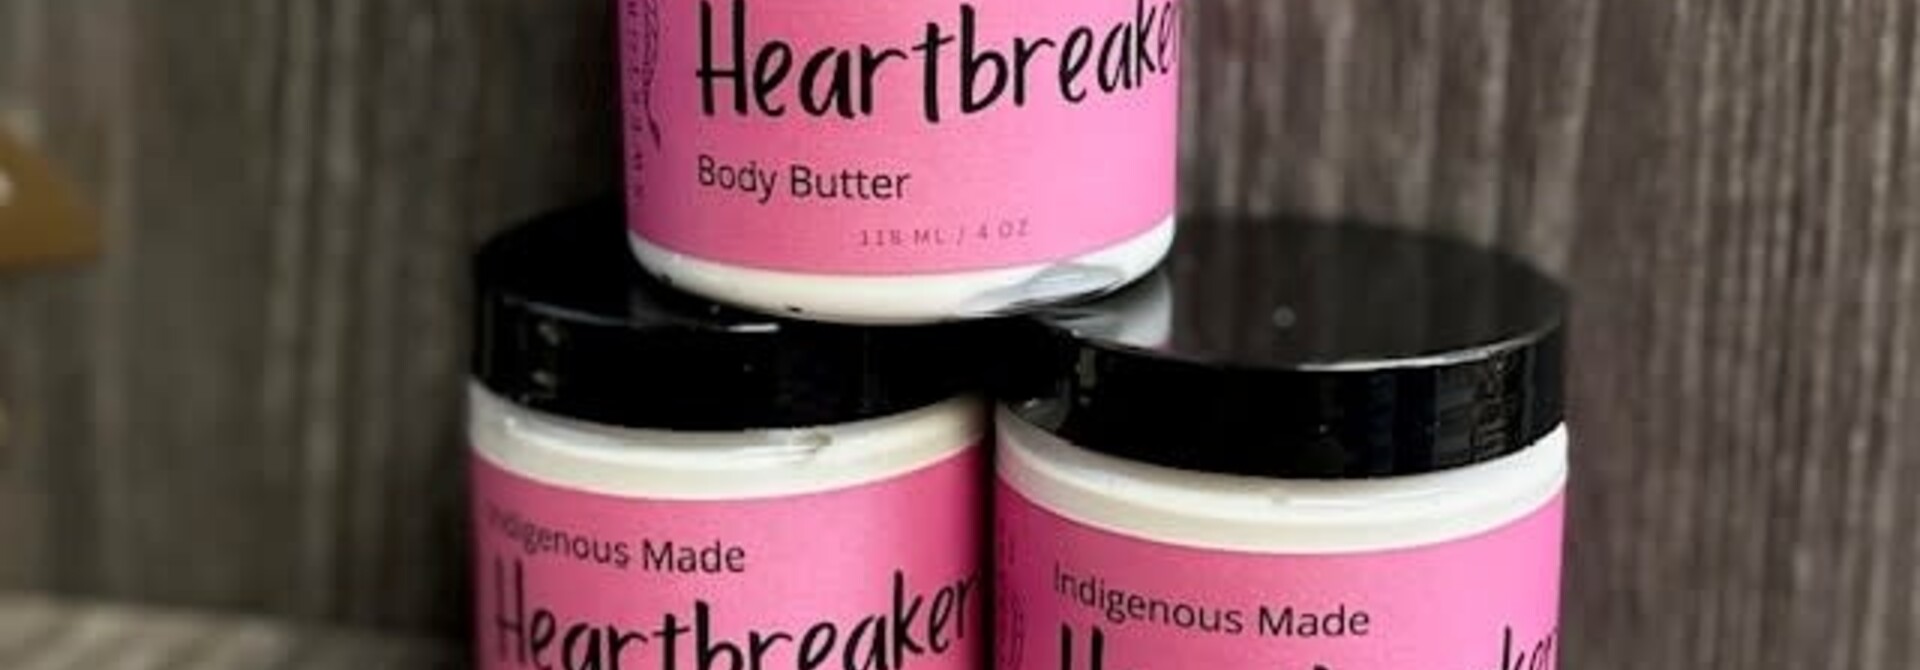 Heartbreaker Body Butter by Sweetgrass Soap